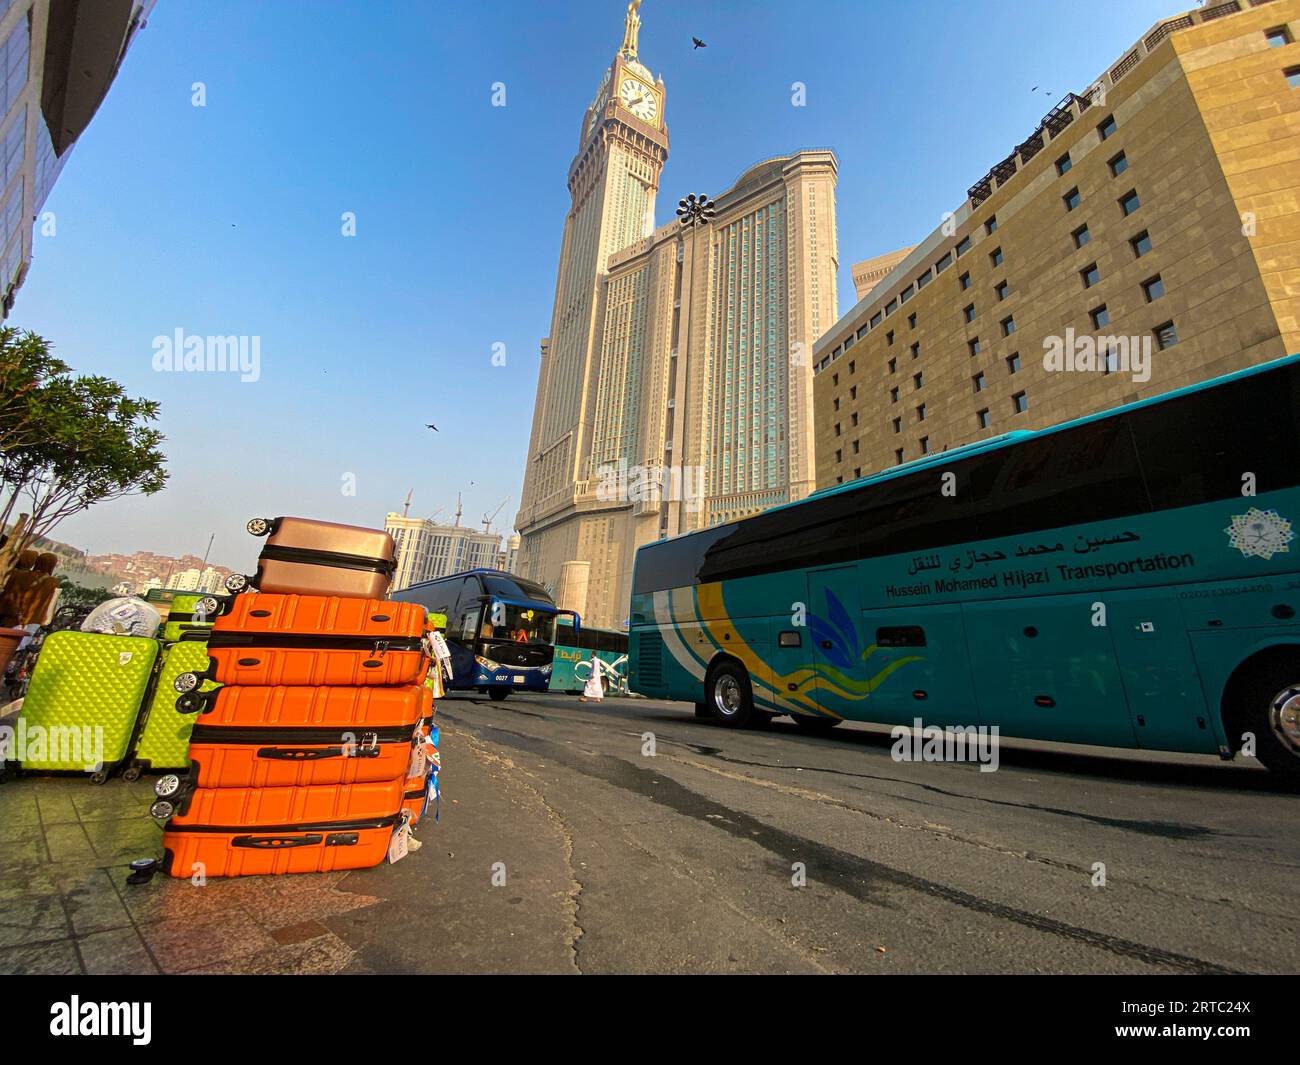 La Mecque, Arabie Saoudite - 26 août 2023 : bagages orange vus devant l'hôtel près de Kaaba, la Mecque, Arabie Saoudite pendant la période oumrah Banque D'Images